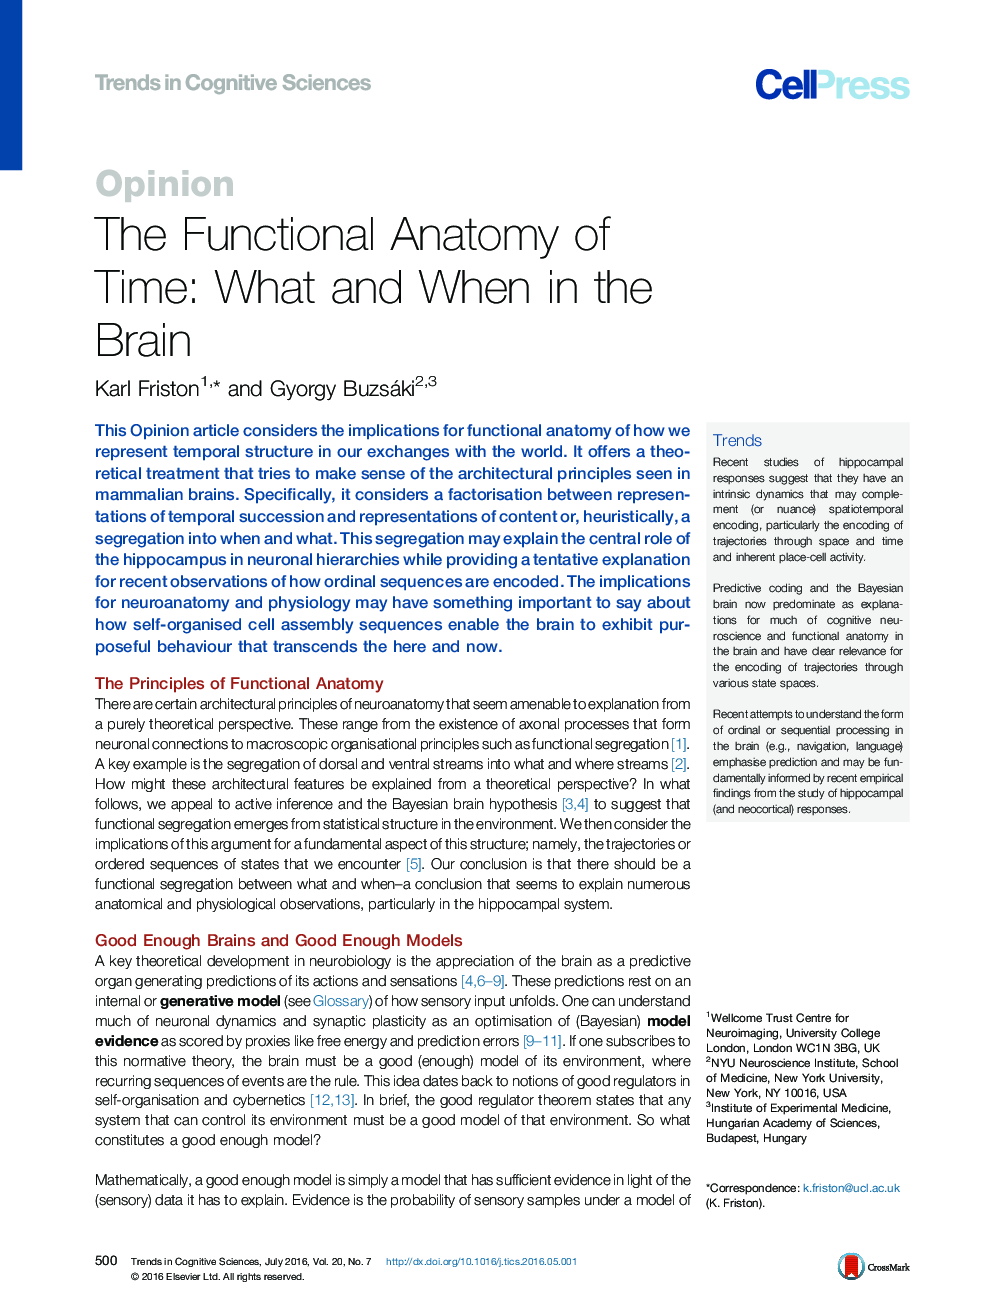 آناتومی کاربردی زمان: چی و چه وقتی در مغز